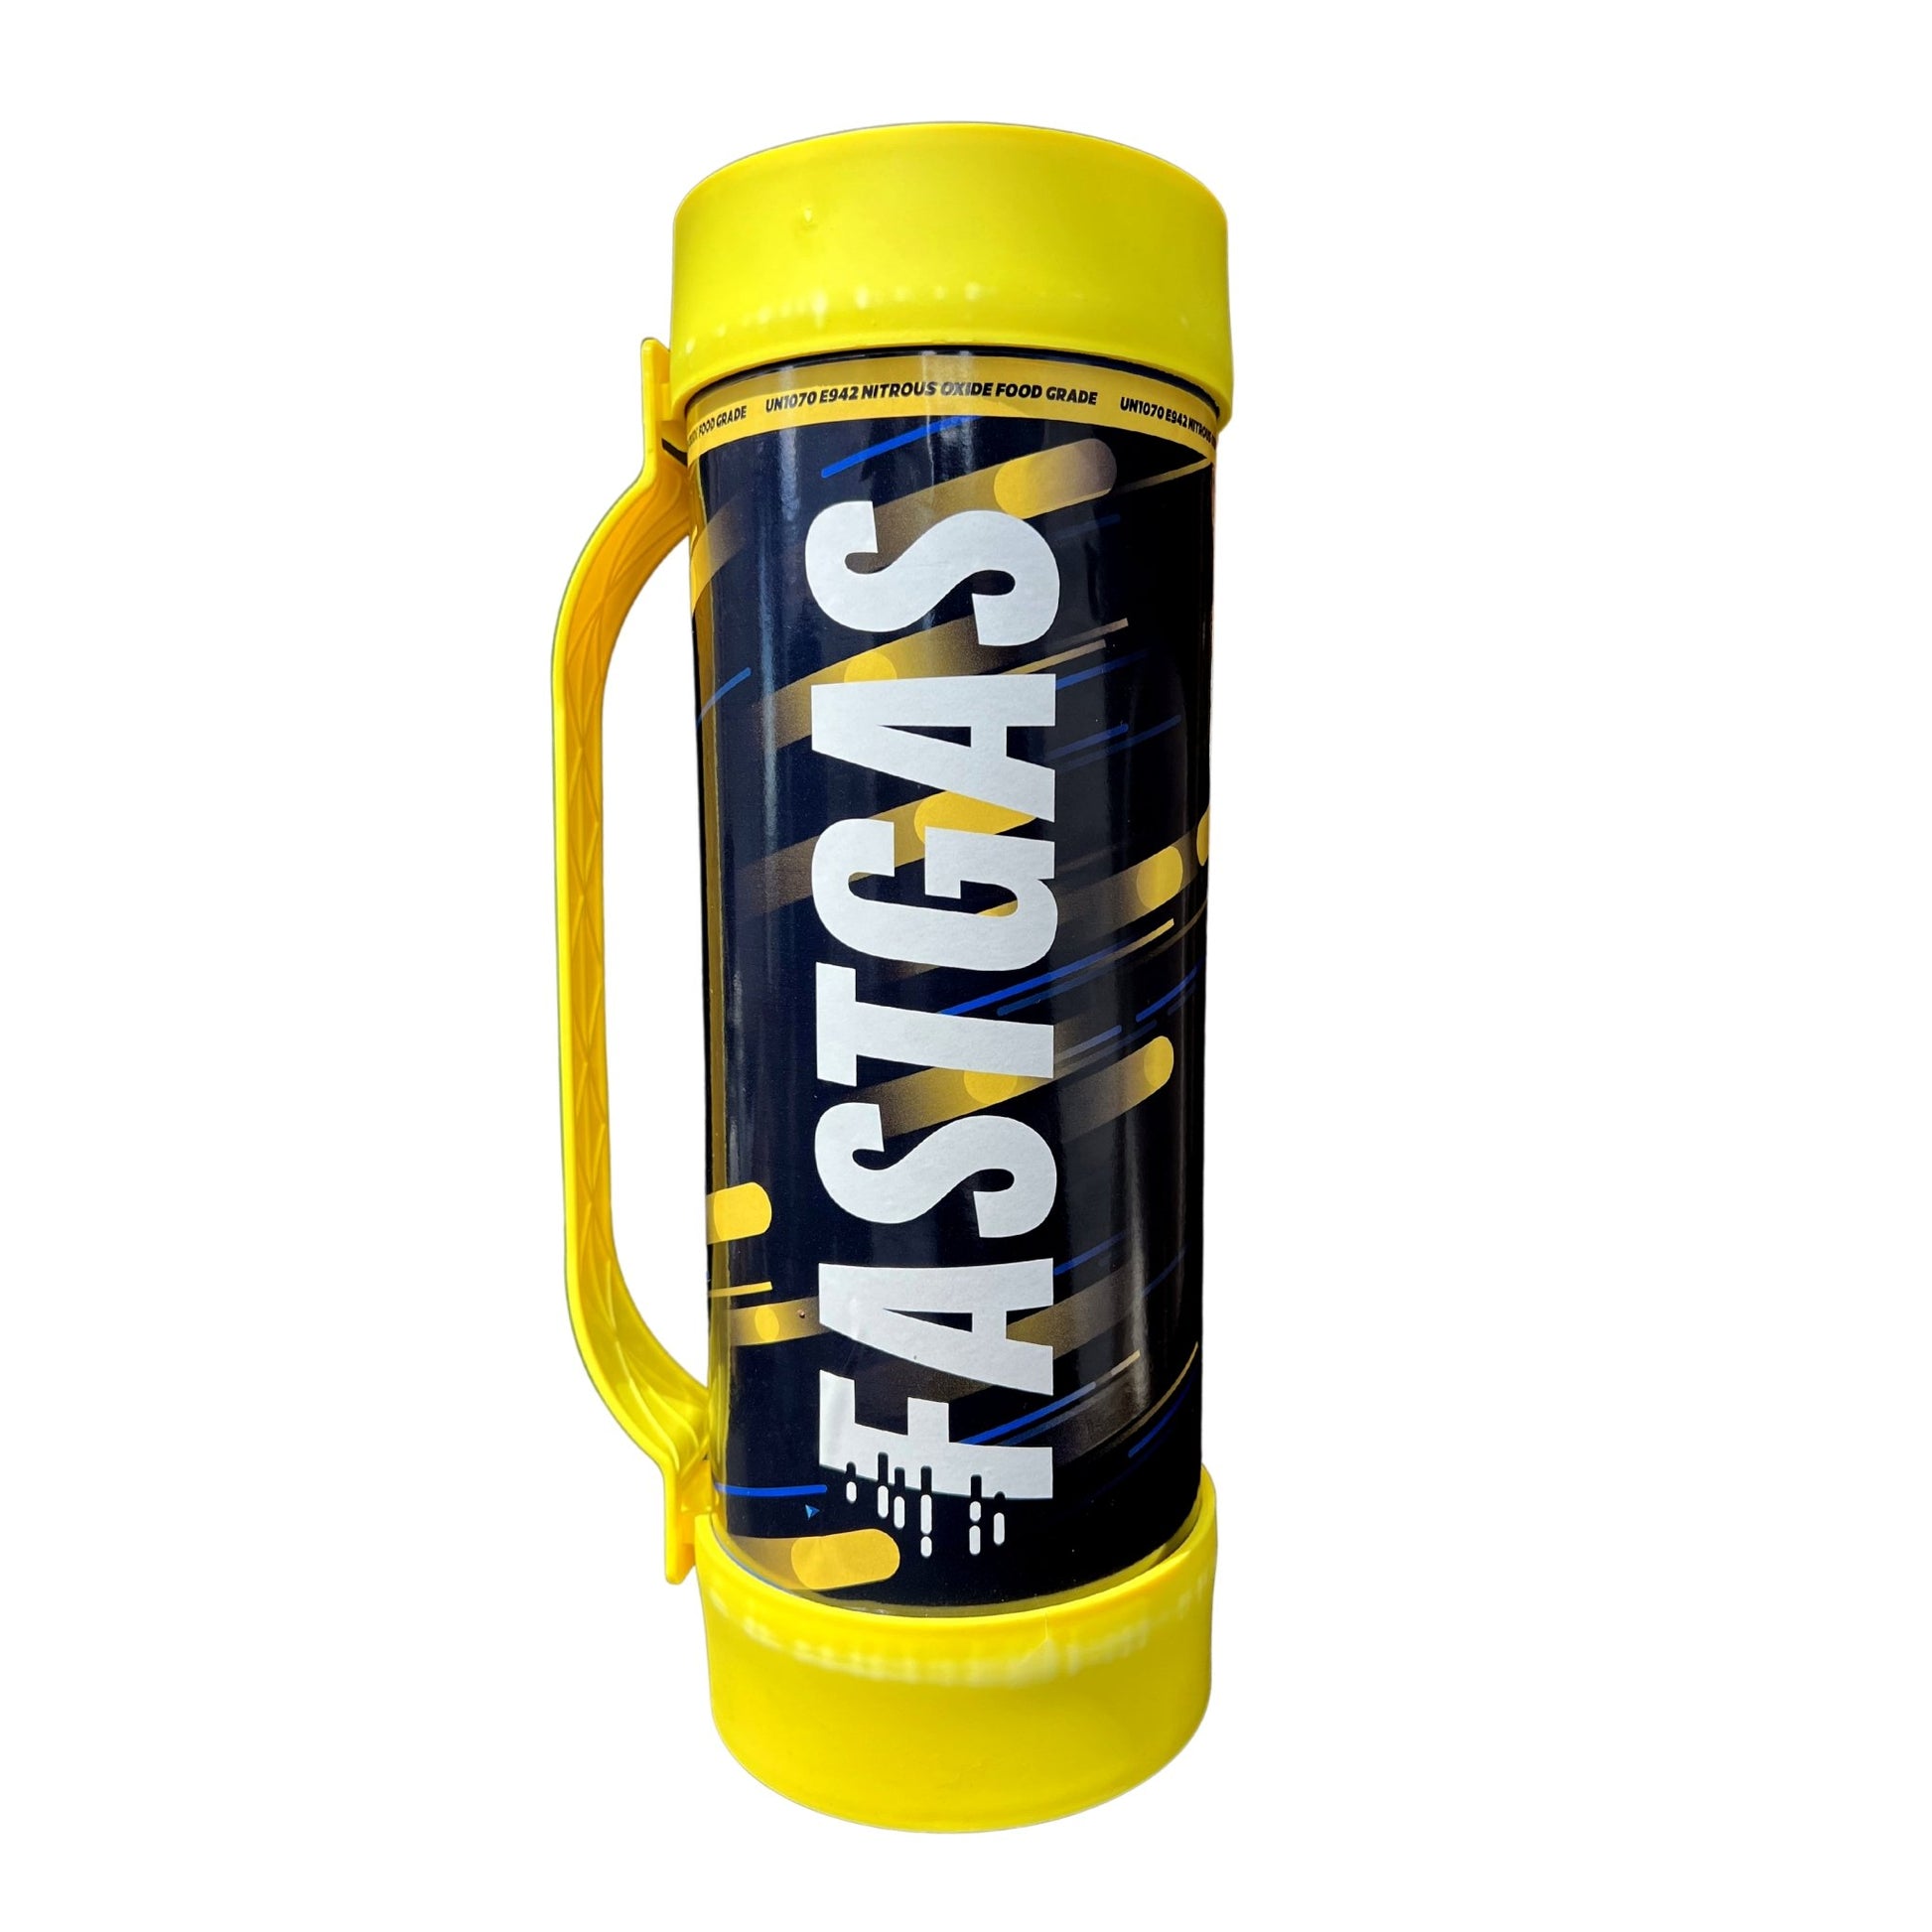 Fast-Gas | Lachgasflasche - 2000 Gramm - Krasses Gas